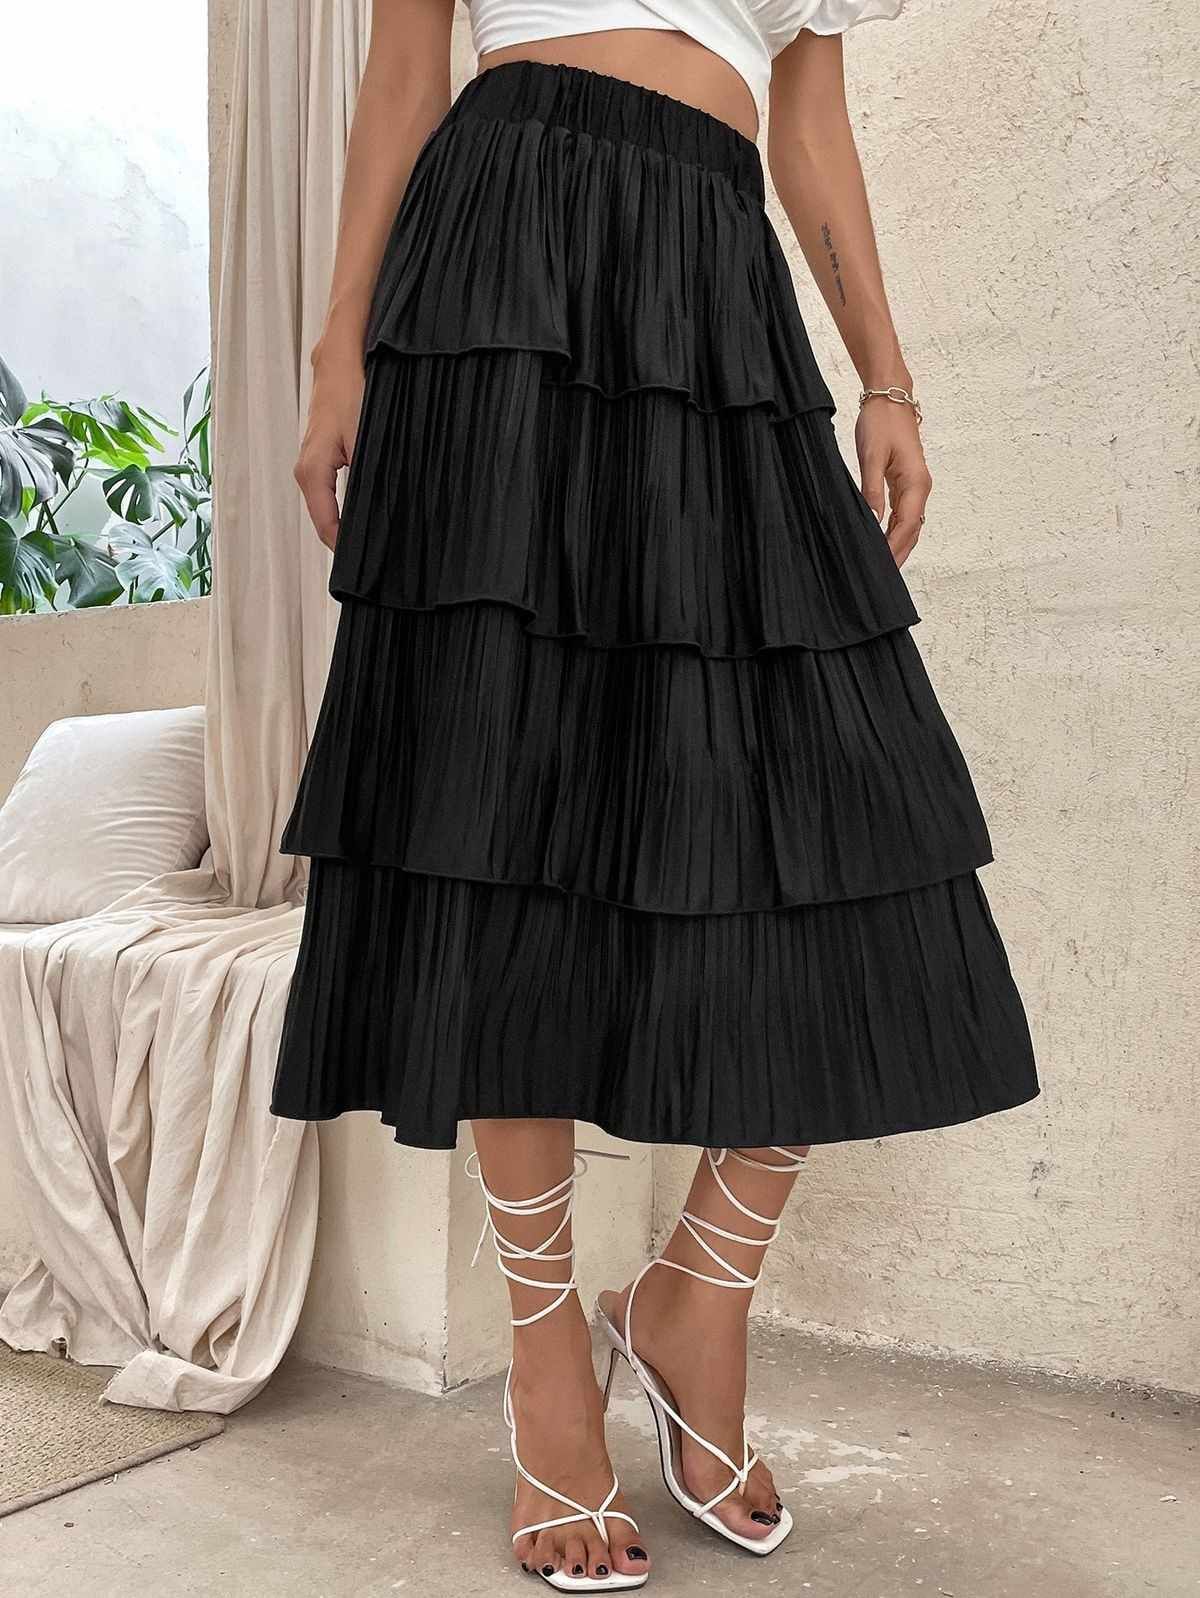 Chân váy đen xếp ly dáng dài kéo khoá cạnh sườn mã code: 4387/247/800 ZARA  chính hãng(kèm ảnh thật) | Shopee Việt Nam